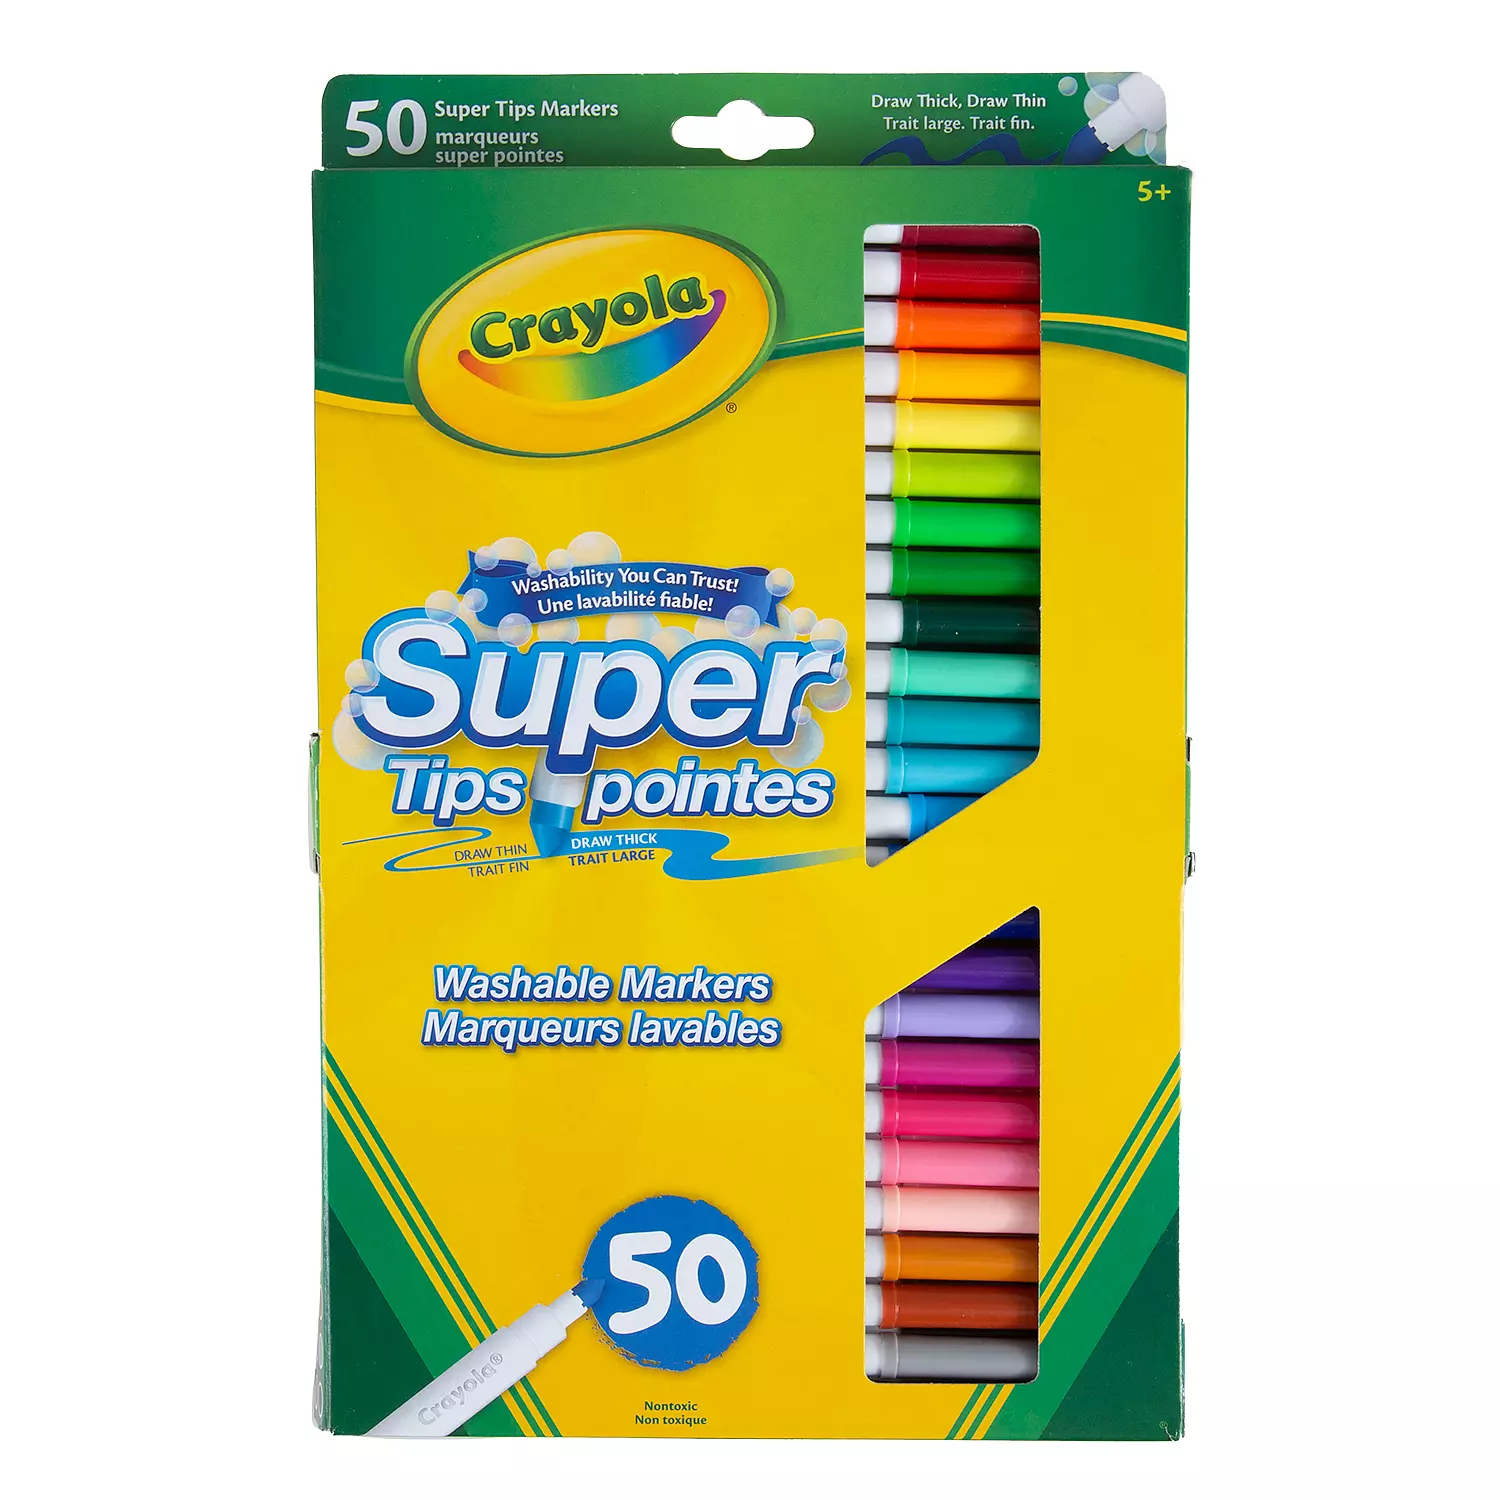 Crayola - 50 marquers super pointes